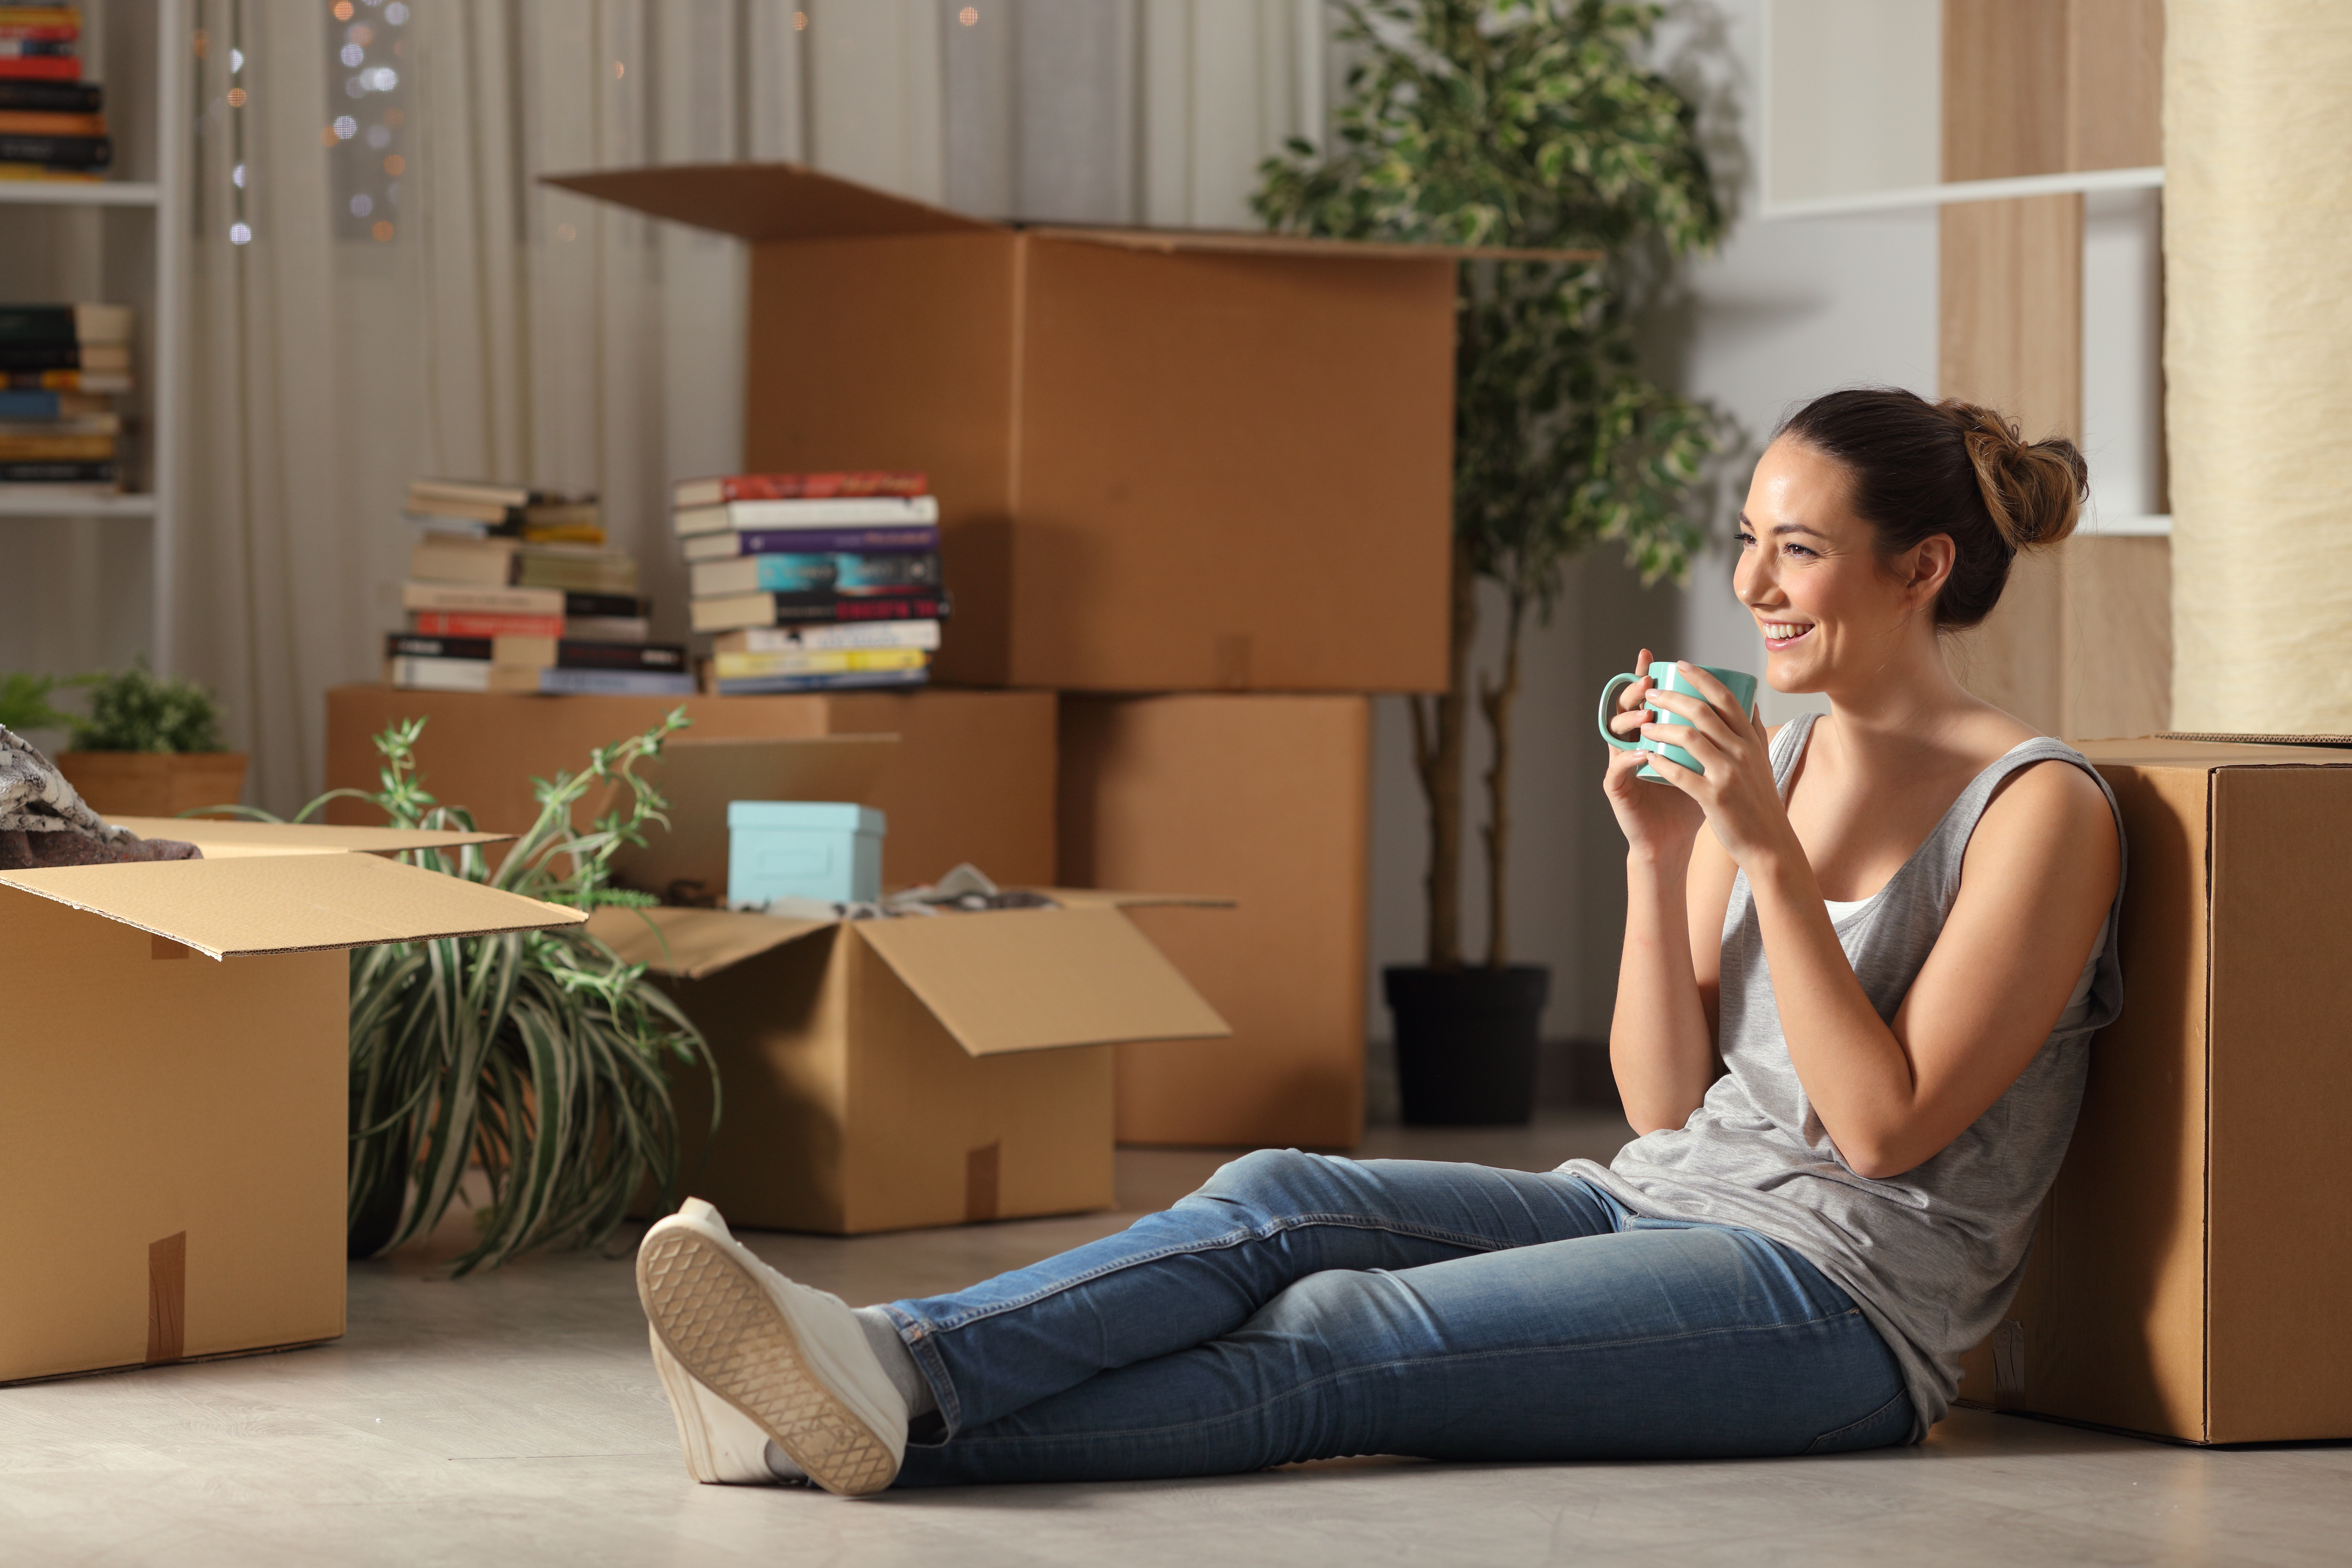 Une jeune fille assise par terre, entourée de cartons, en train de boire un café | Source : Shutterstock